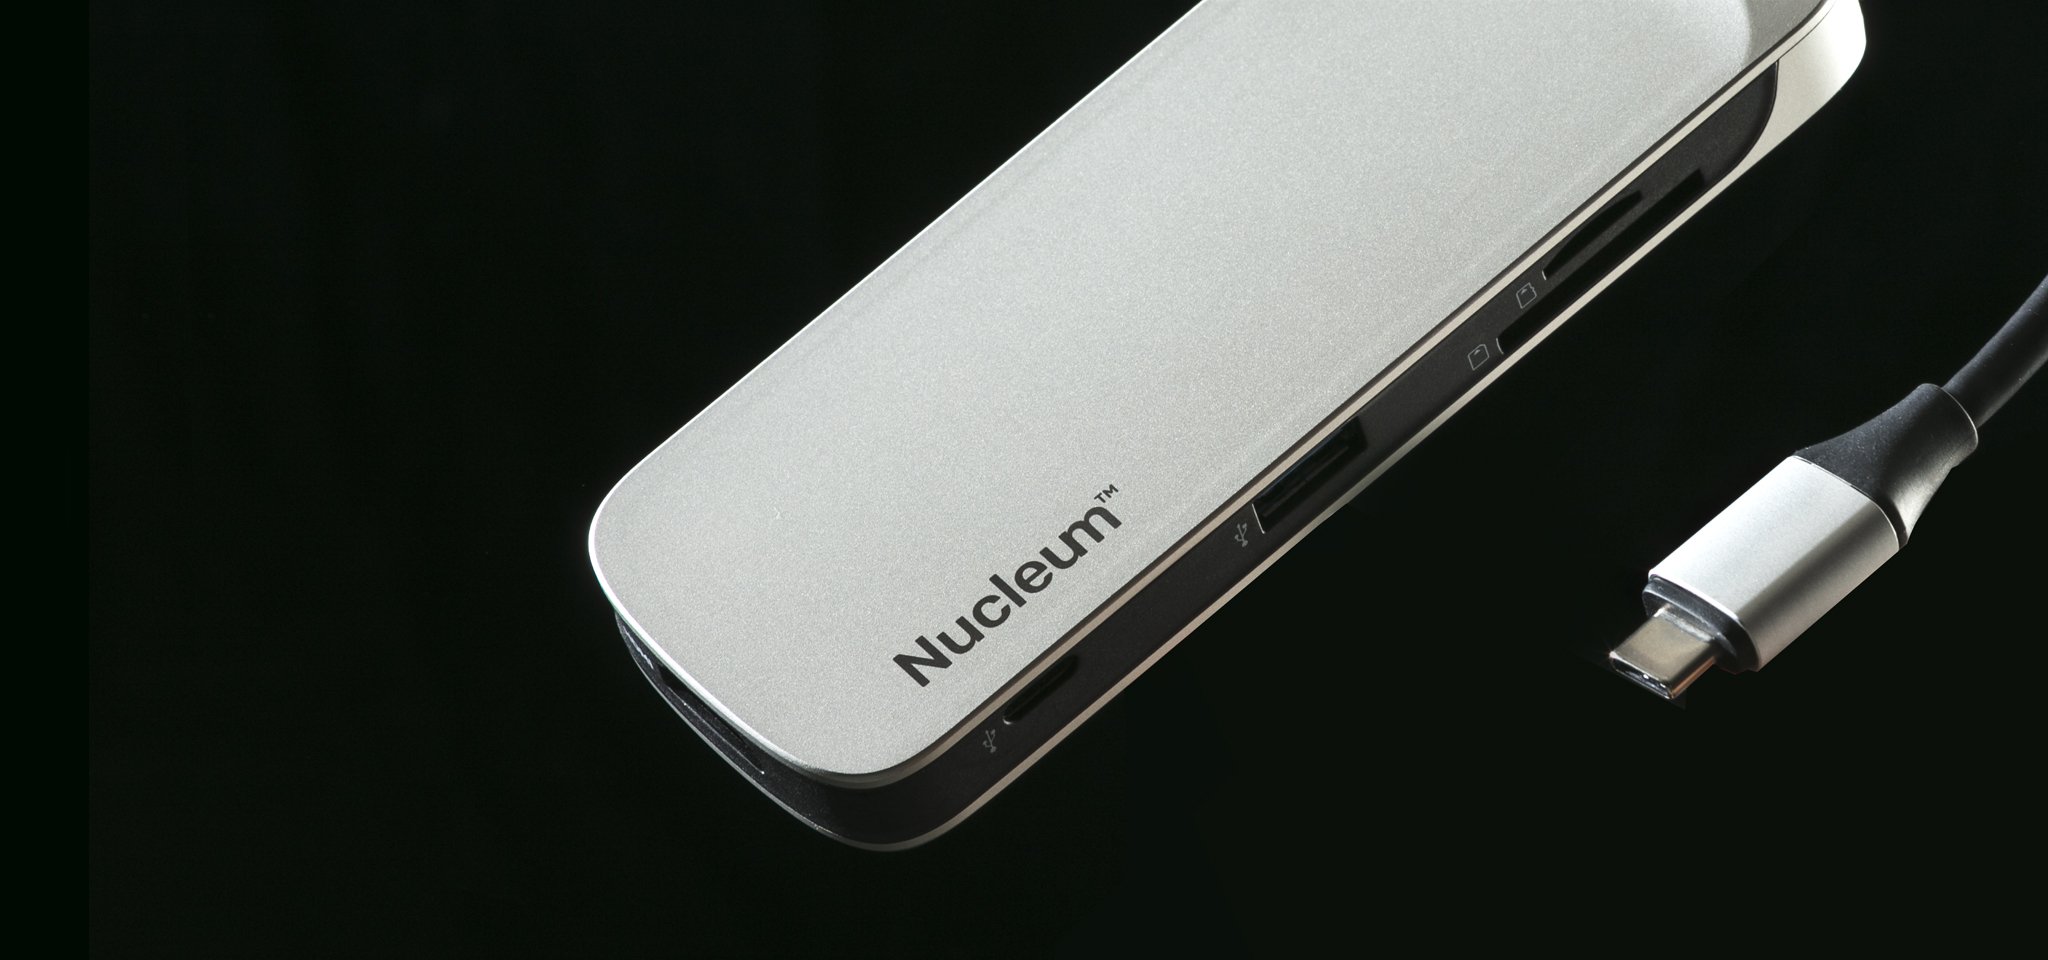 Hub dan pembaca kartu USB-C Nucleum terlihat pada posisi miring dengan latar belakang hitam pekat